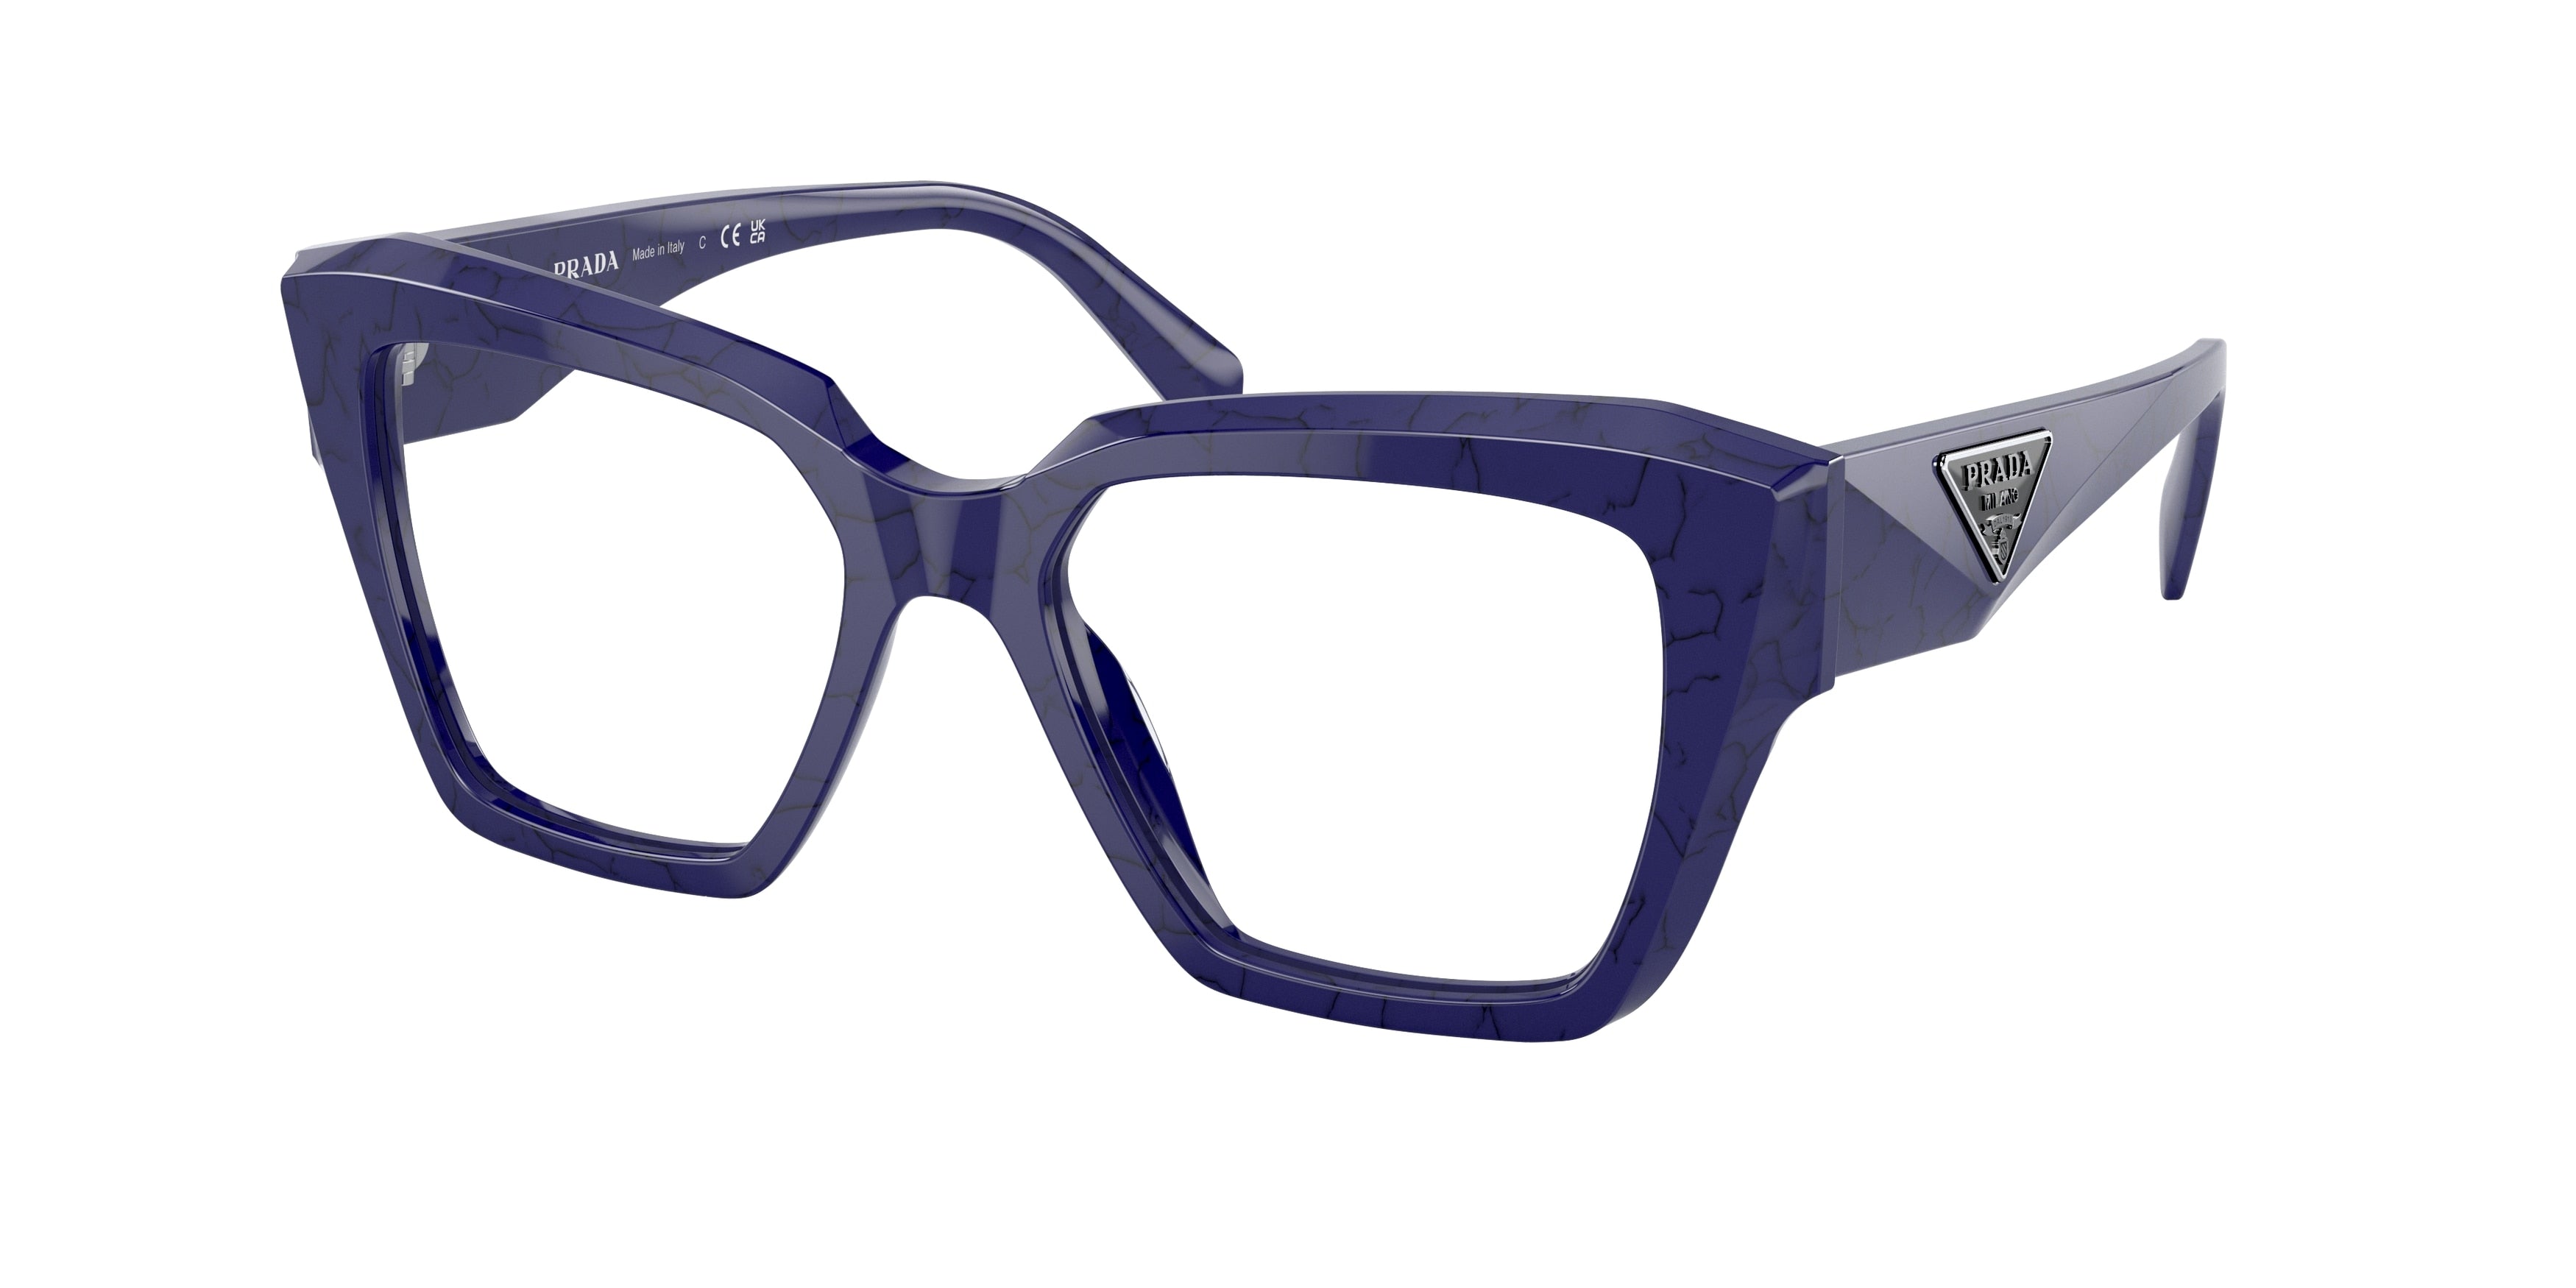 Prada PR09ZV Square Eyeglasses  18D1O1-Marmo Baltico 51-140-17 - Color Map White